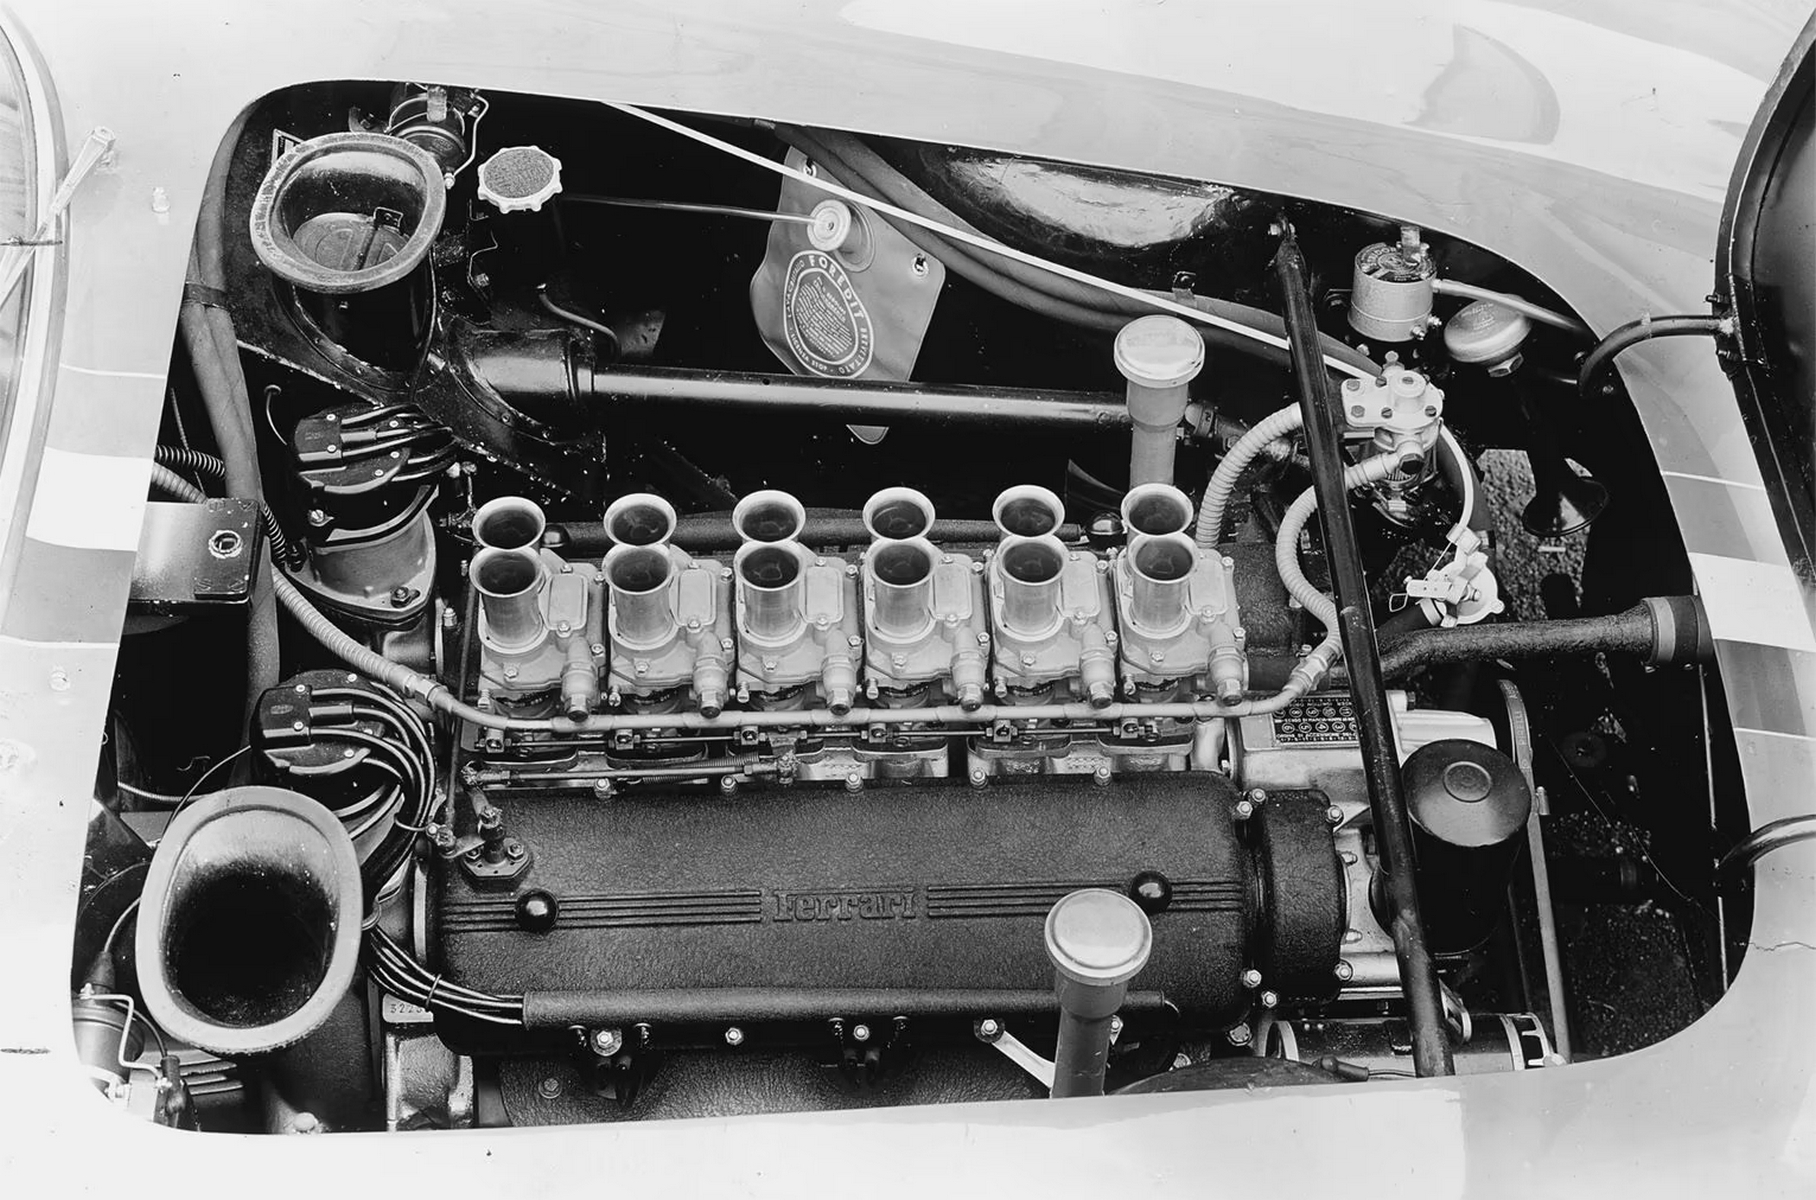 В развале трёхлитрового мотора Tipo 168/62 Competizione стояли шесть вертикальных карбюраторов Weber 38 DCN. Мощность составляла около 300 л.с.